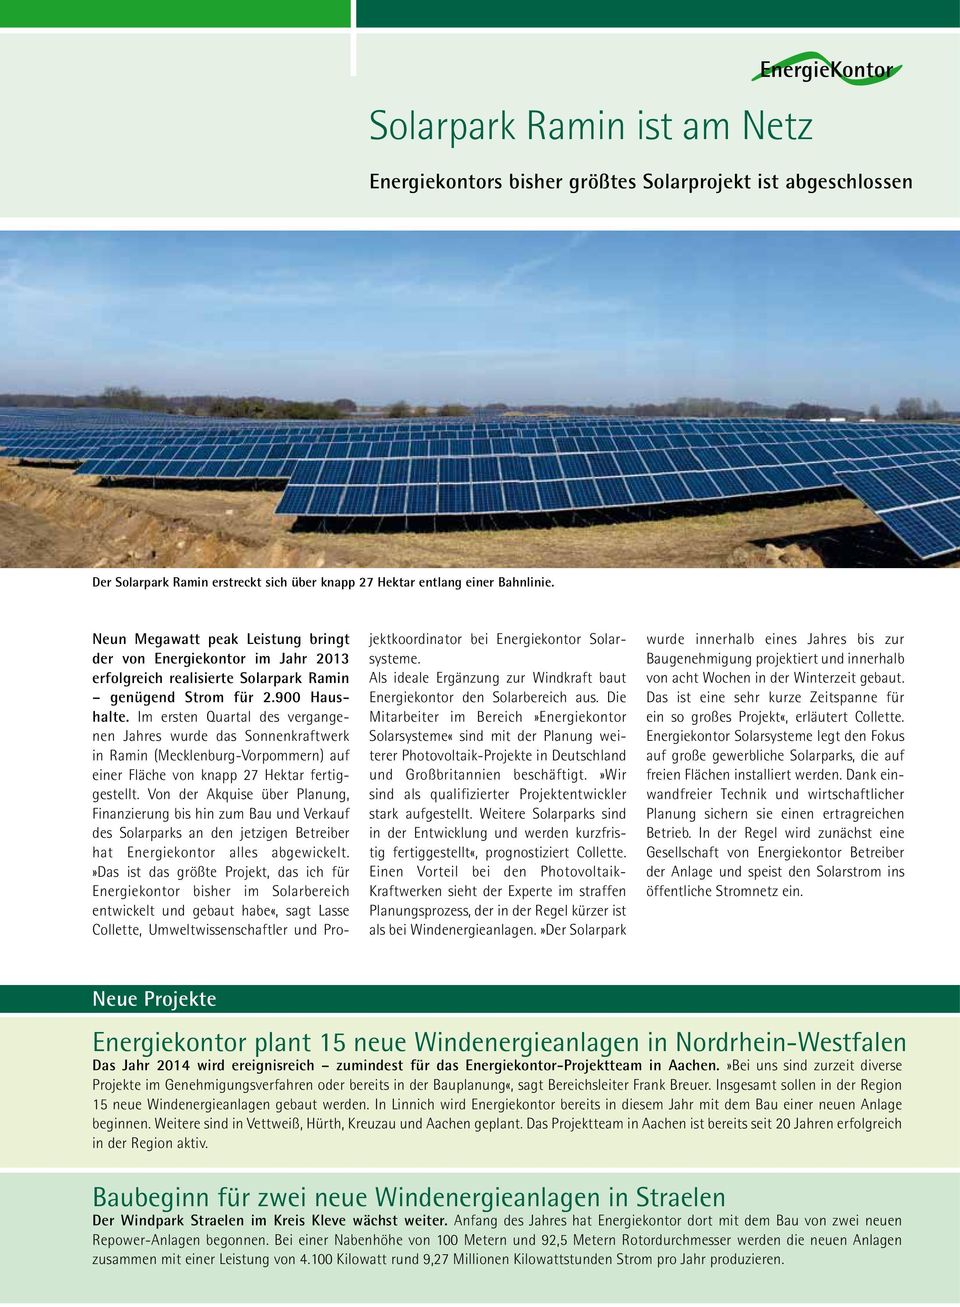 Im ersten Quartal des vergangenen Jahres wurde das Sonnenkraftwerk in Ramin (Mecklenburg-Vorpommern) auf einer Fläche von knapp 27 Hektar fertiggestellt.